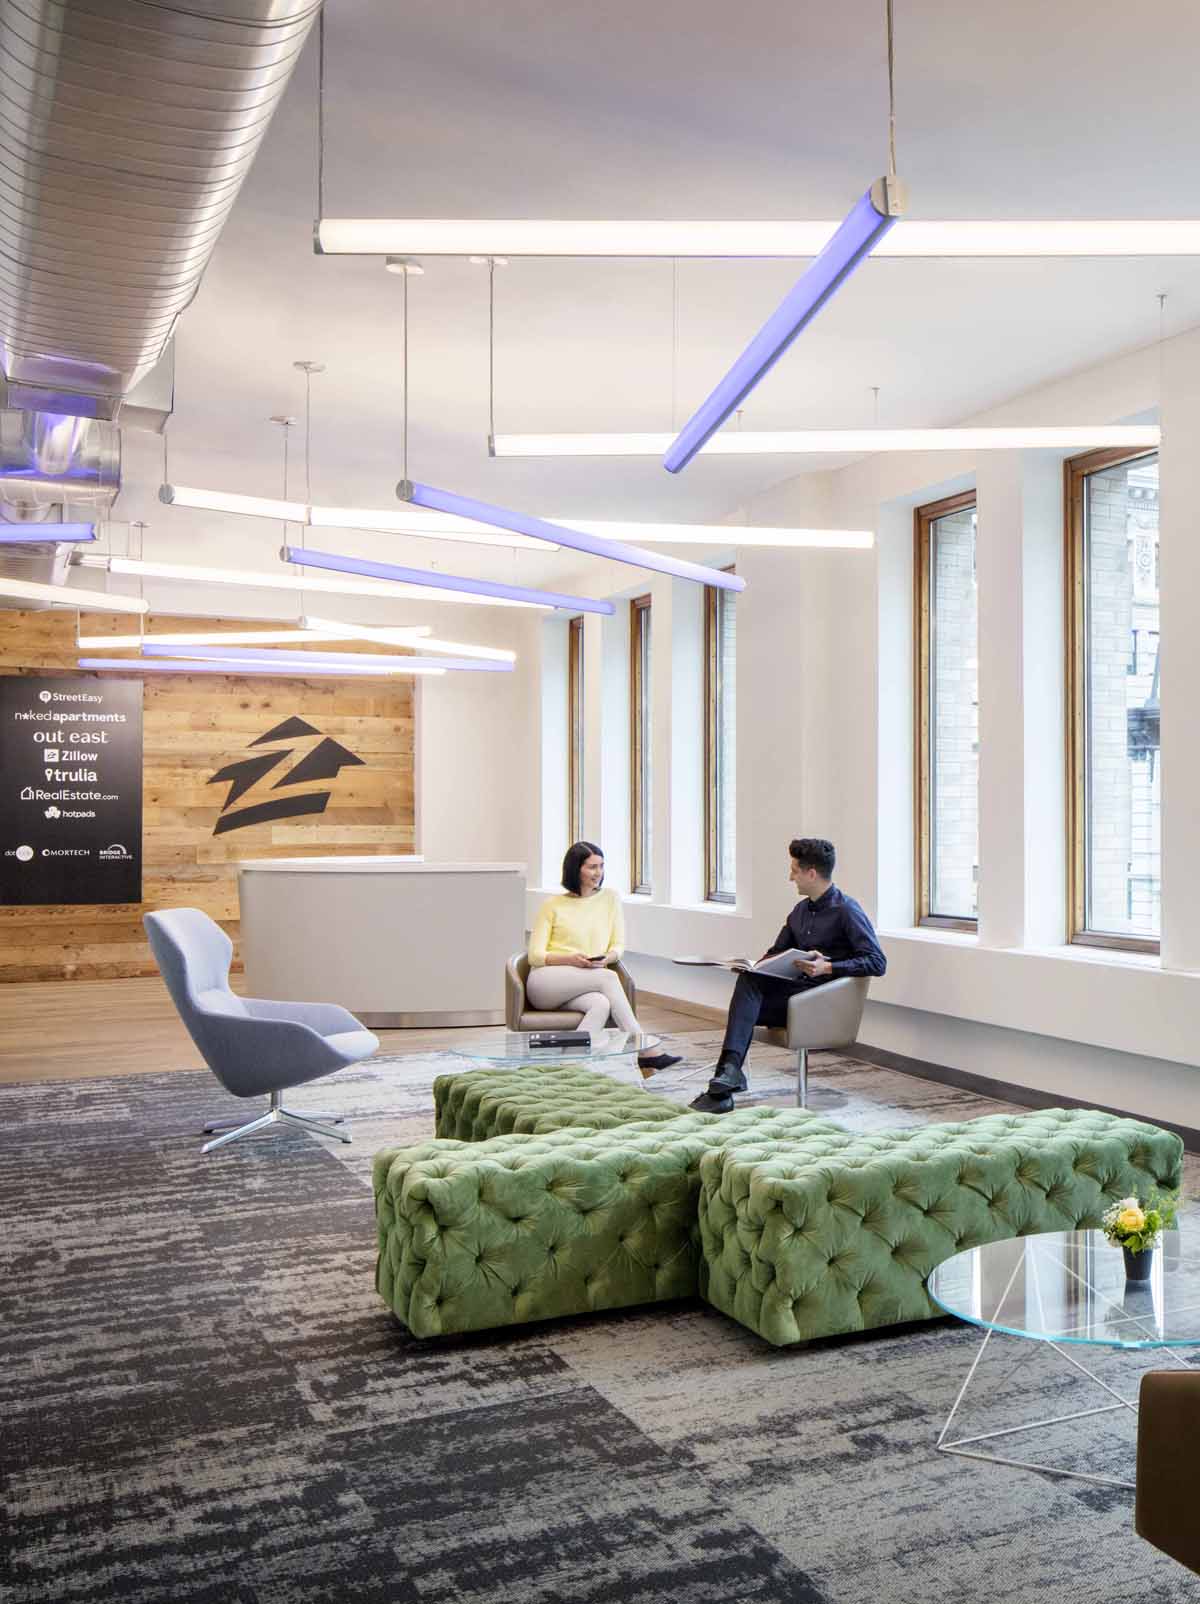 图形空间 美国房产信息平台Zillow Group纽约办公扩张设计欣赏